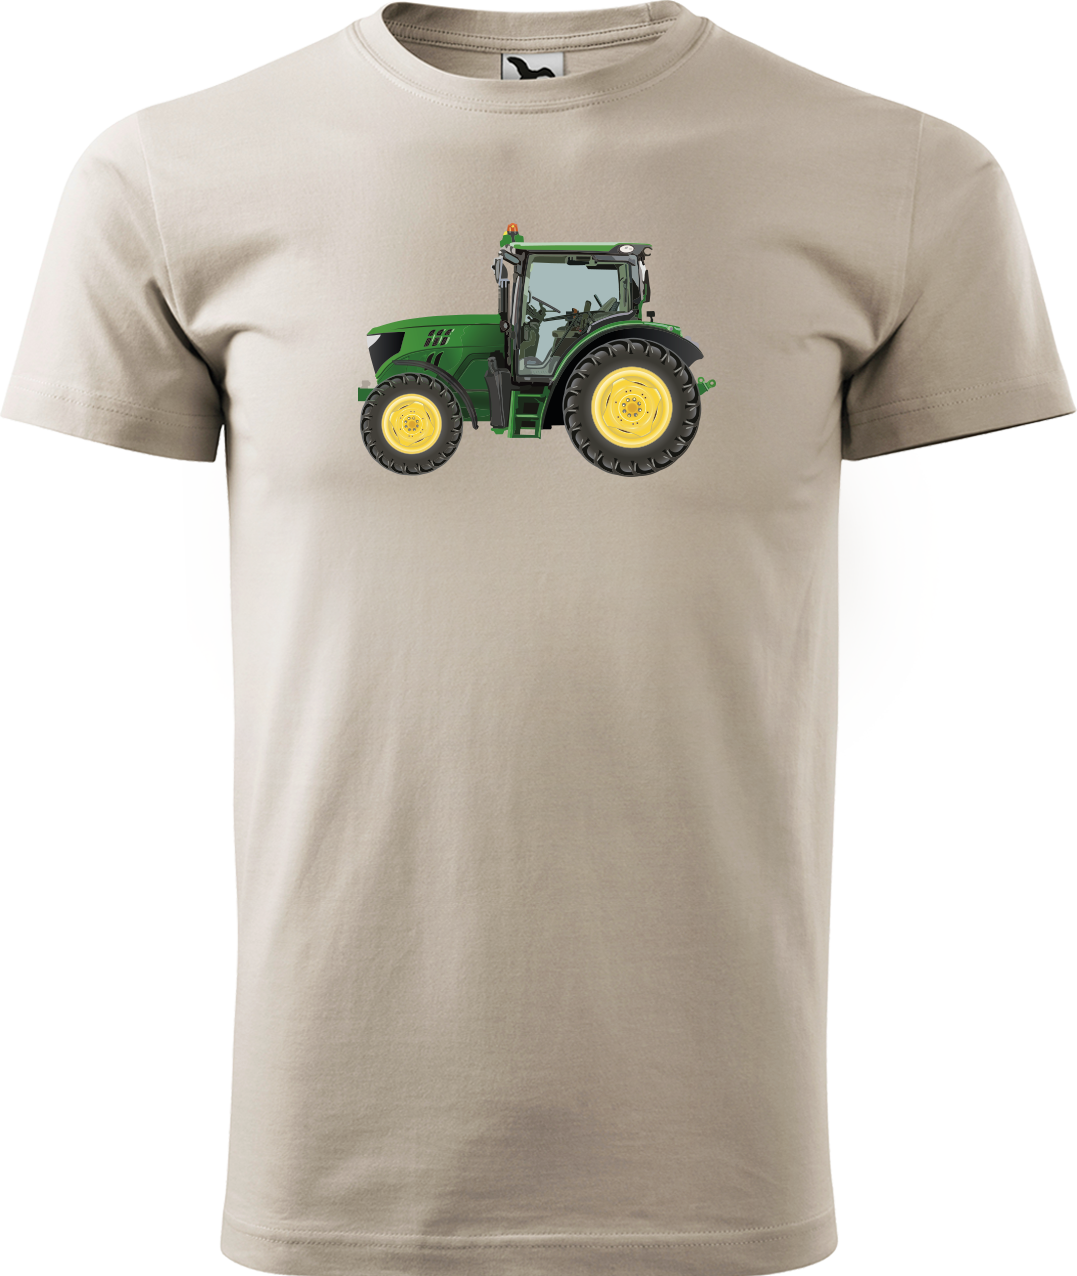 Tričko s traktorem - Zelený traktor Velikost: M, Barva: Béžová (51)